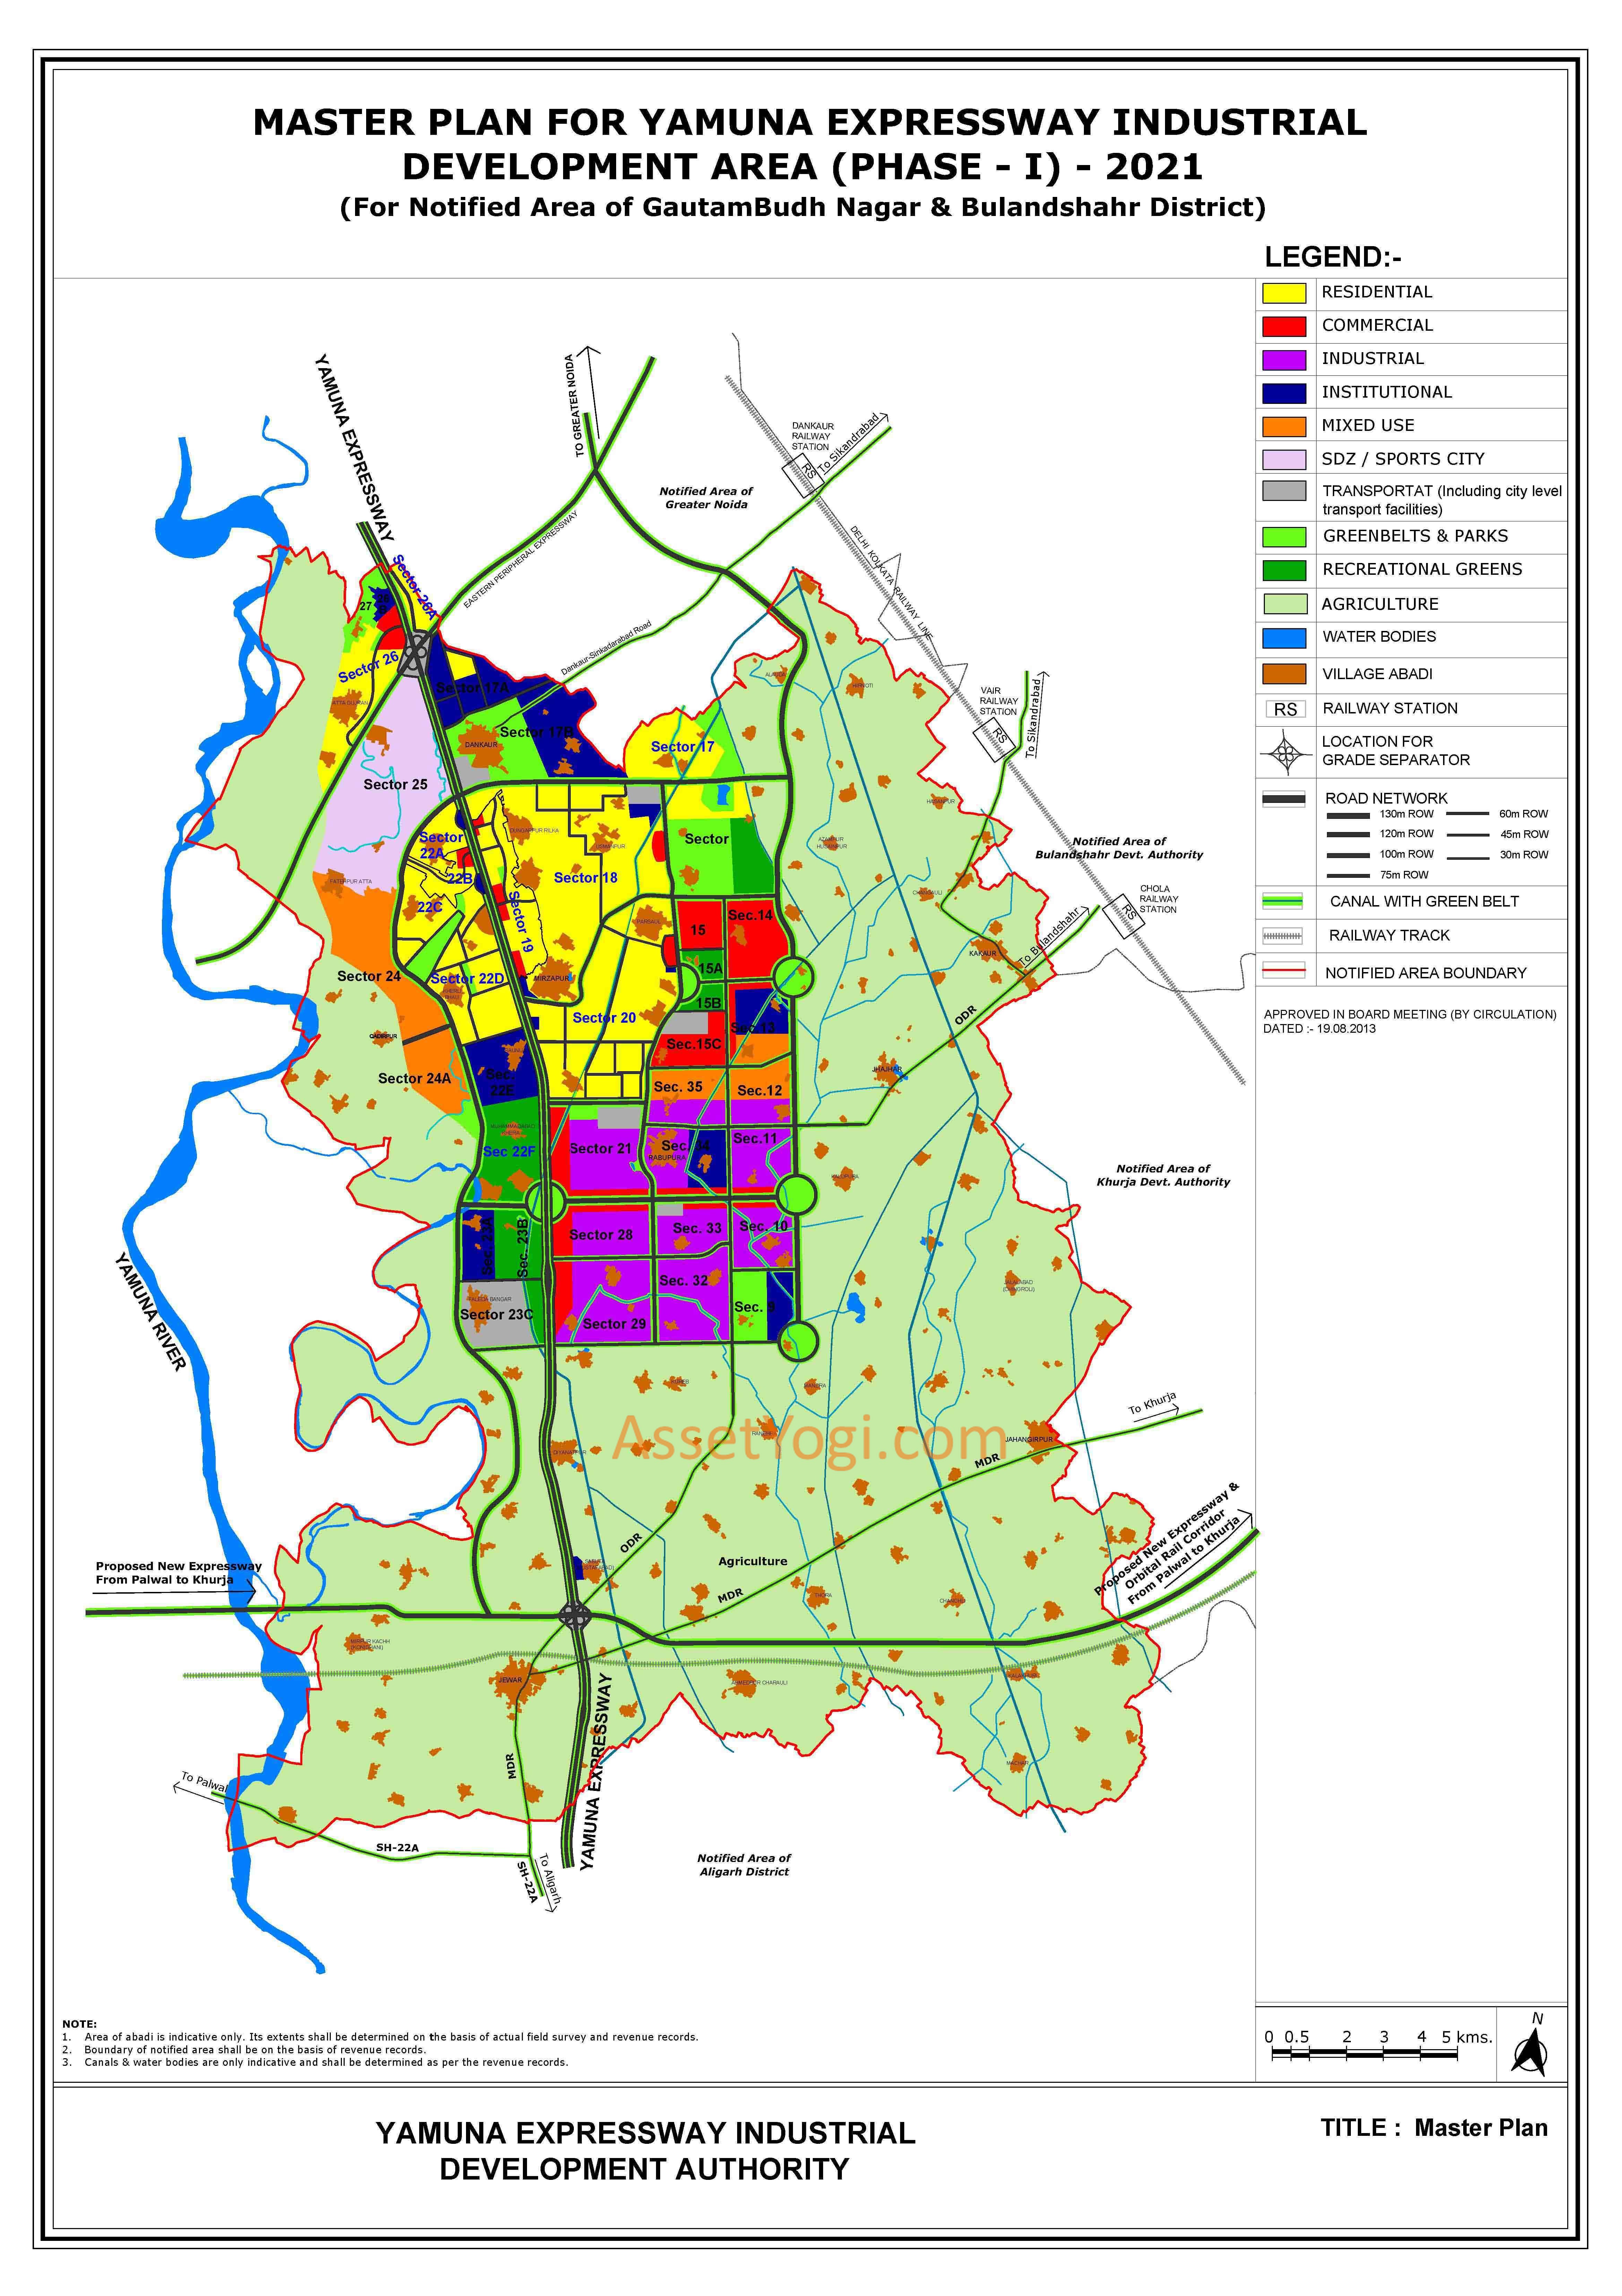 yamuna expressway master plan 2021 map